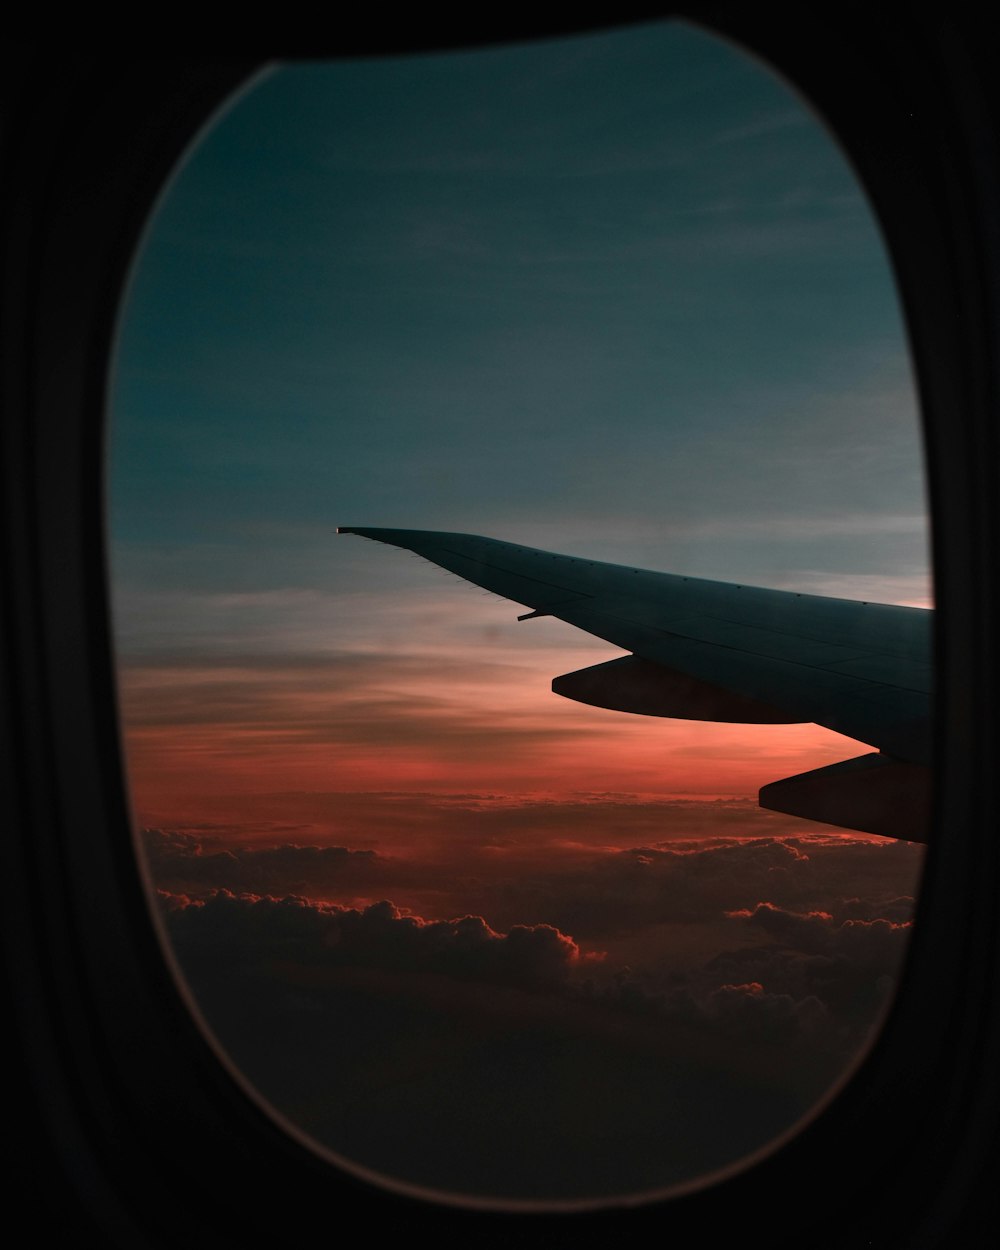 Vue de fenêtre de l’avion pendant l’heure dorée